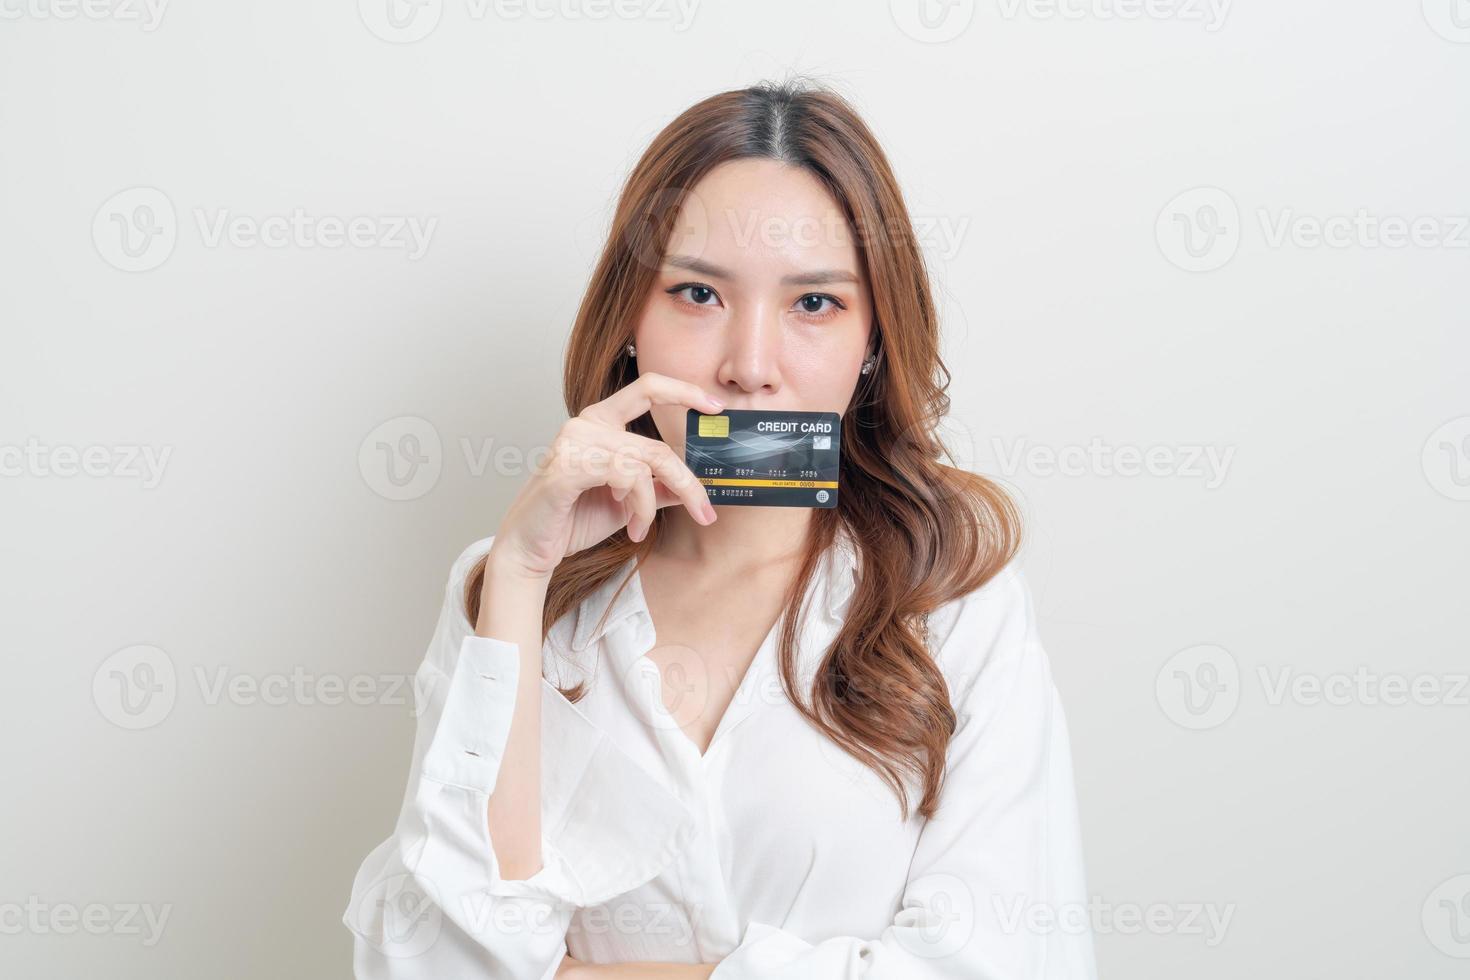 mujer asiática, tenencia, tarjeta de crédito foto